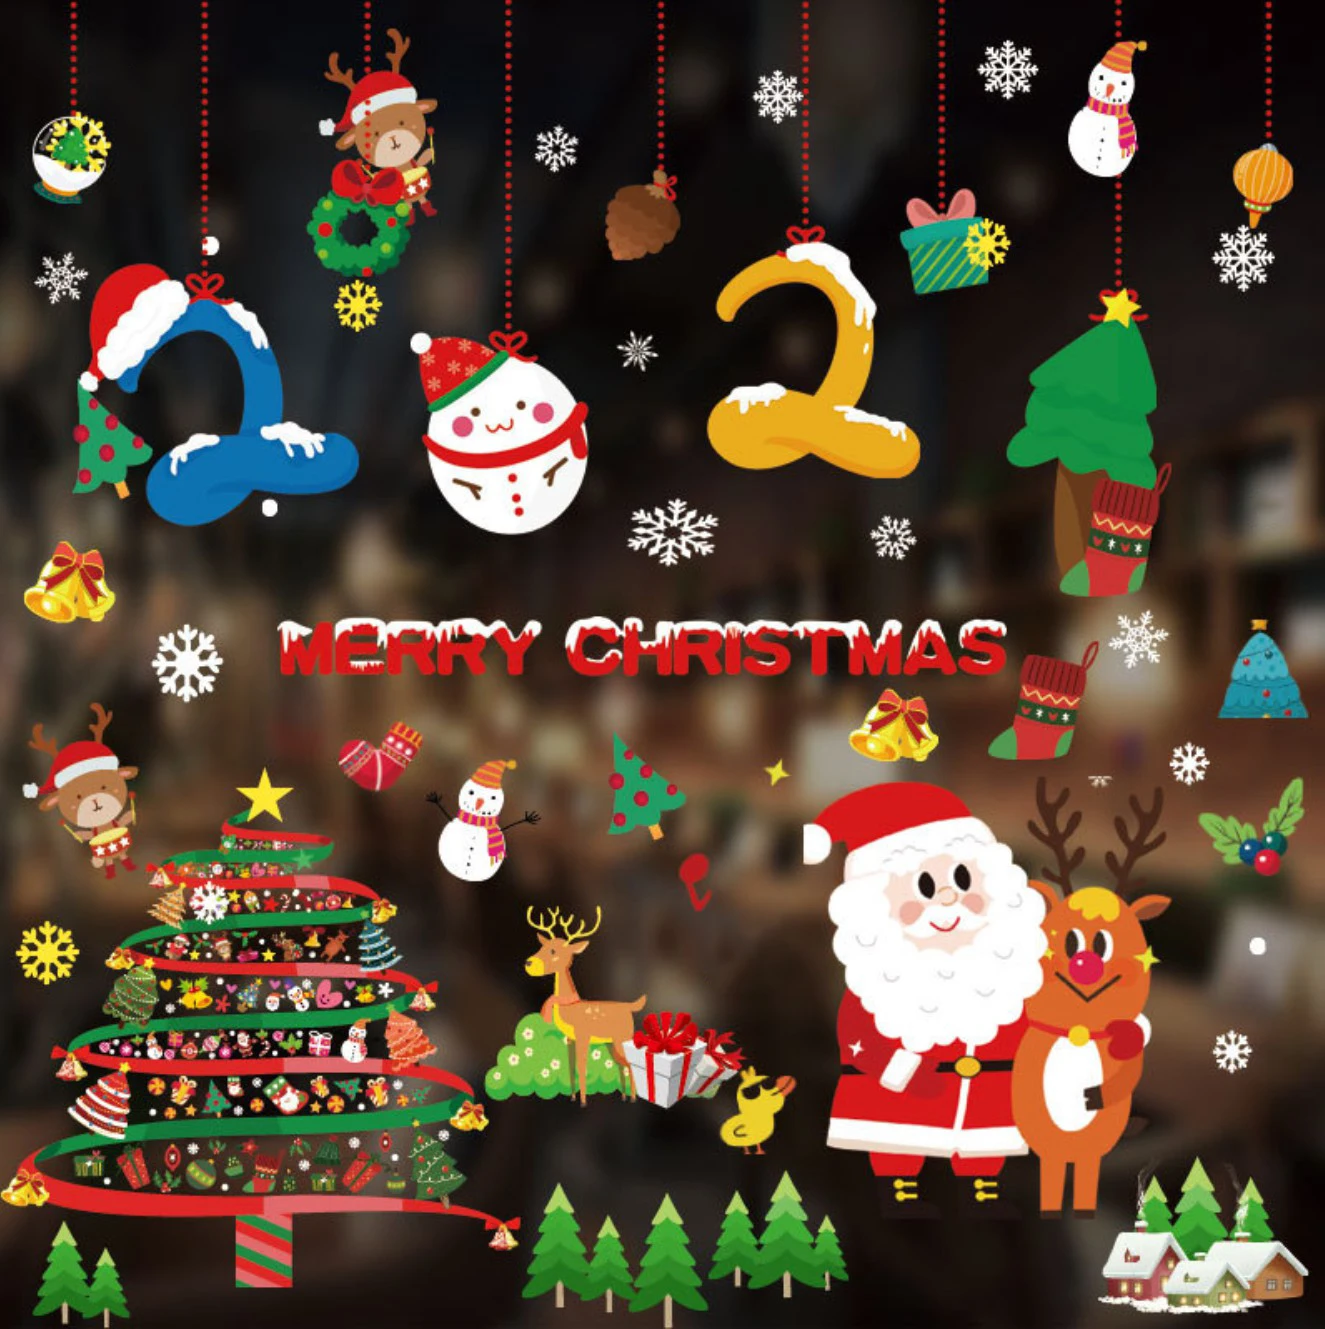 
 Рождественские и Новогодние декоративные наклейки на окно и стекло, Санта-Клаус, снежинка, олень  